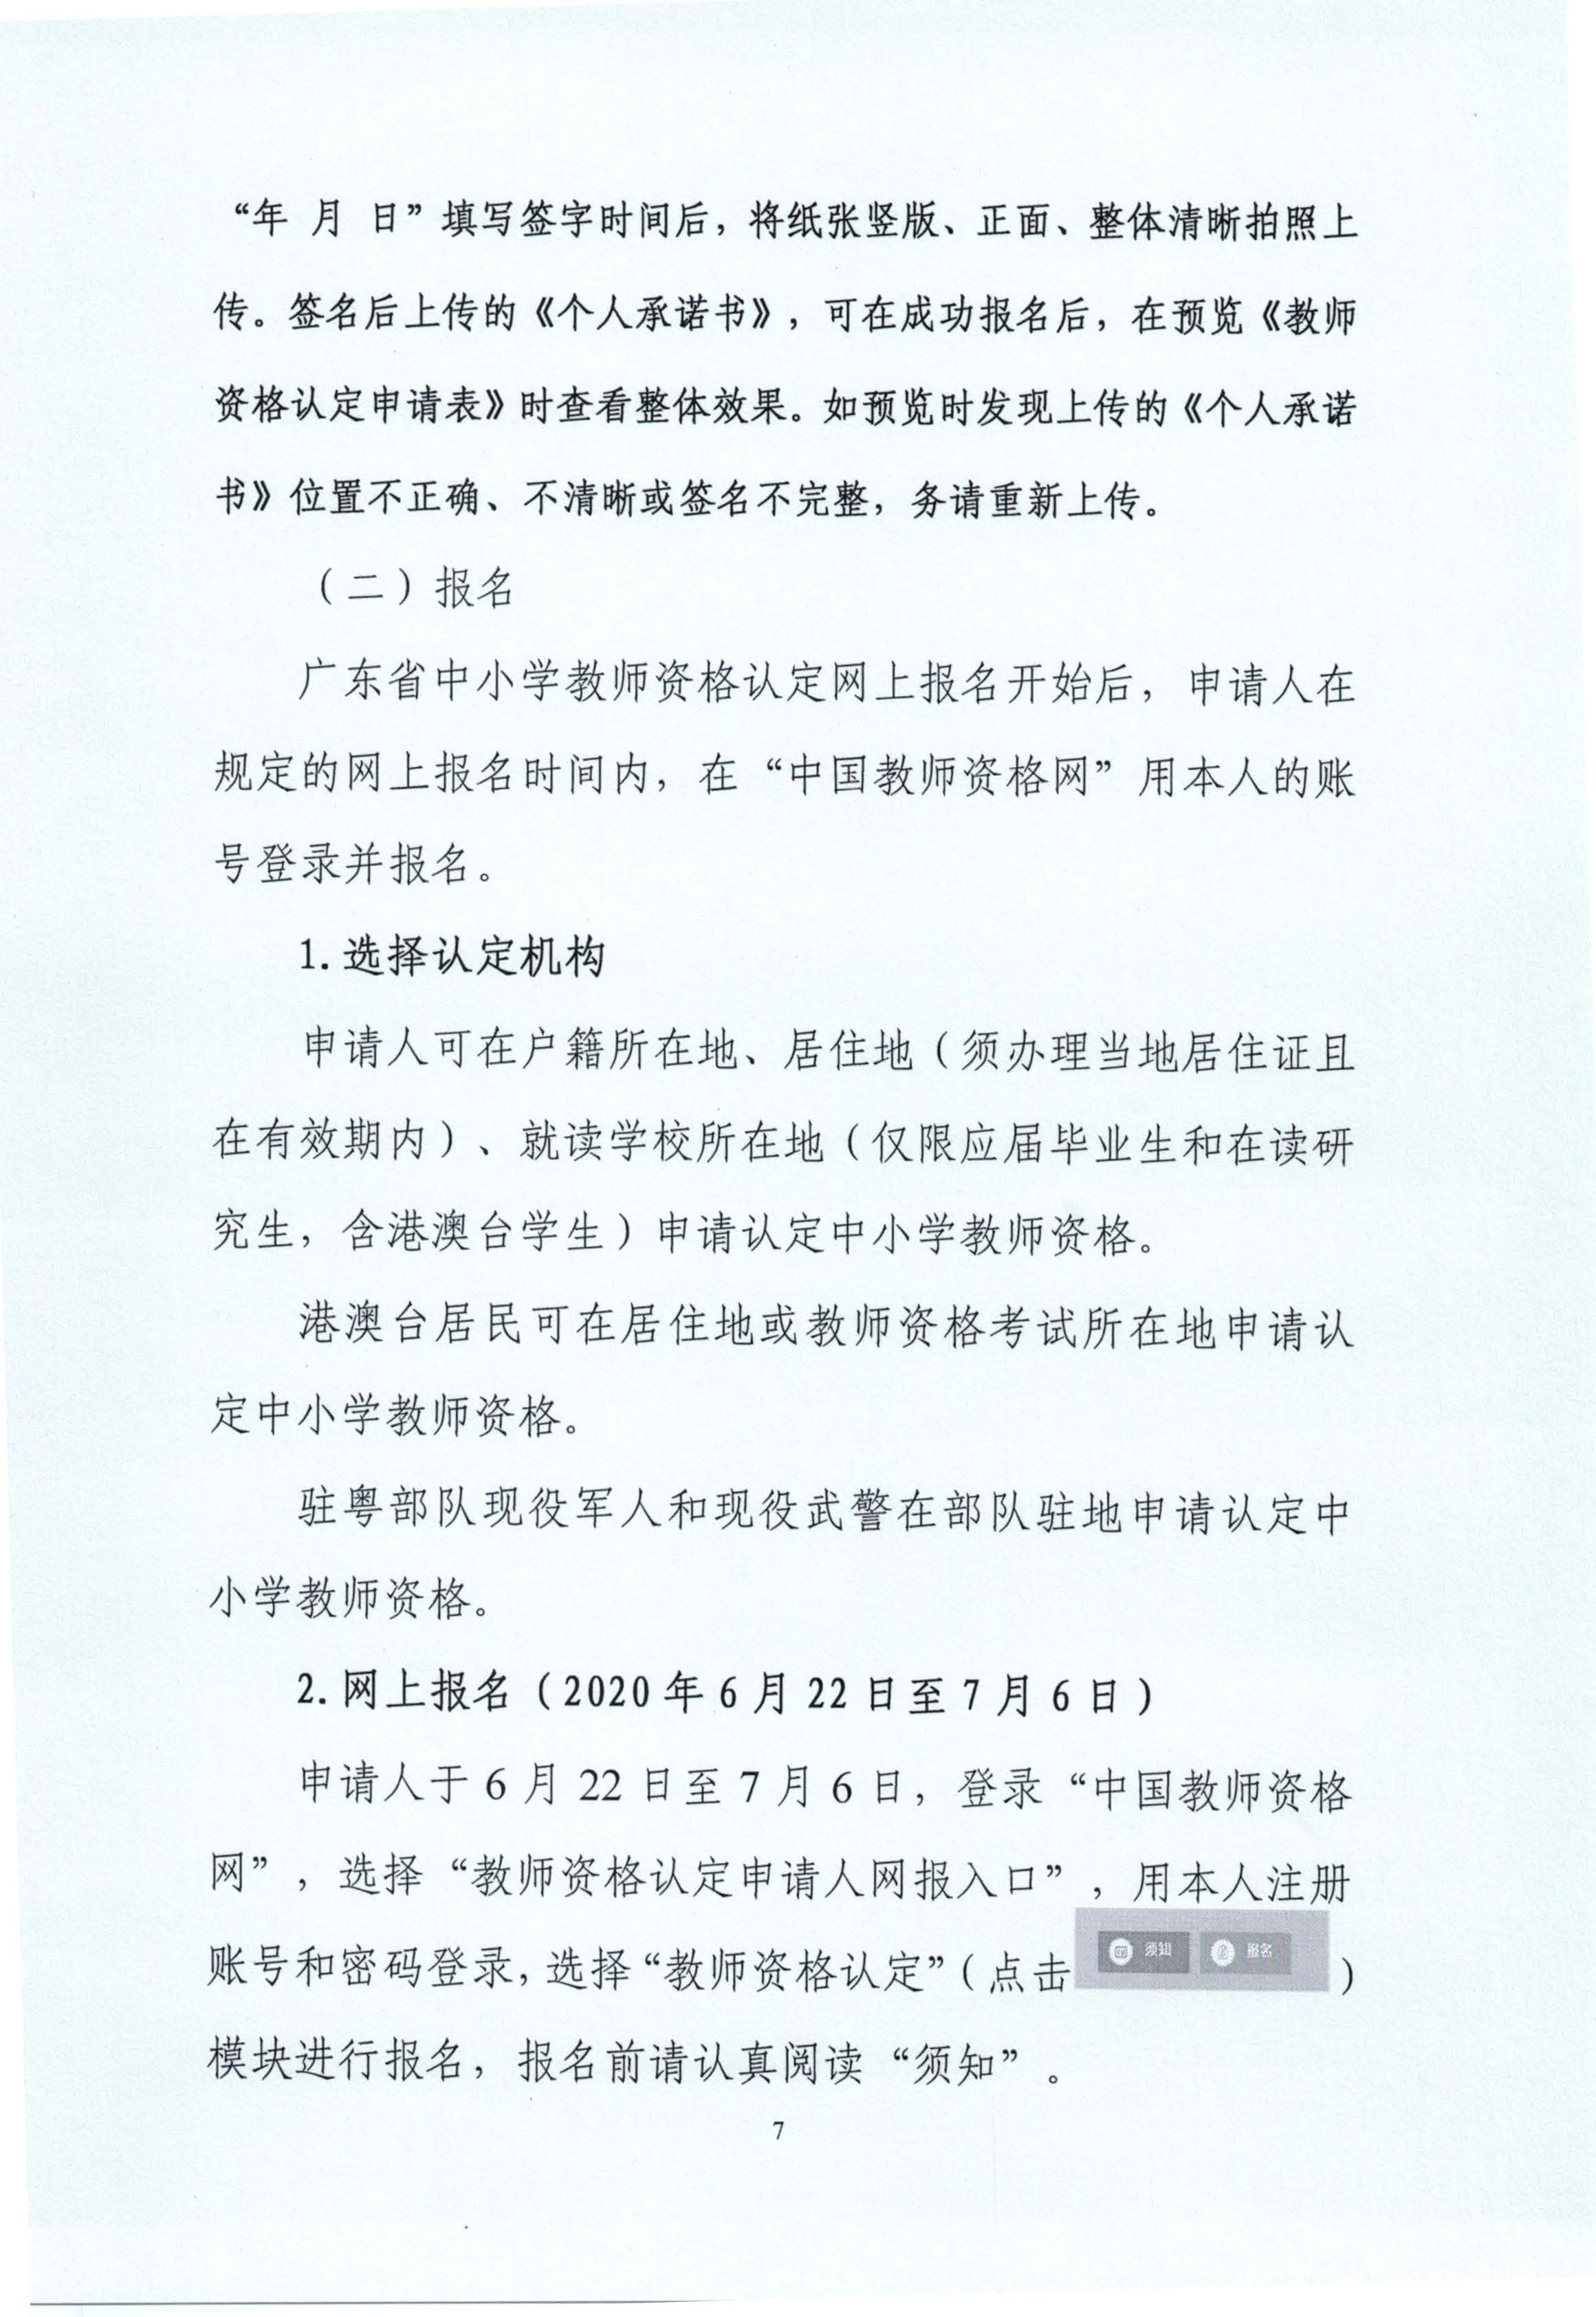 丰顺县2020年上半年中小学教师资格认定公告_页面_07.jpg